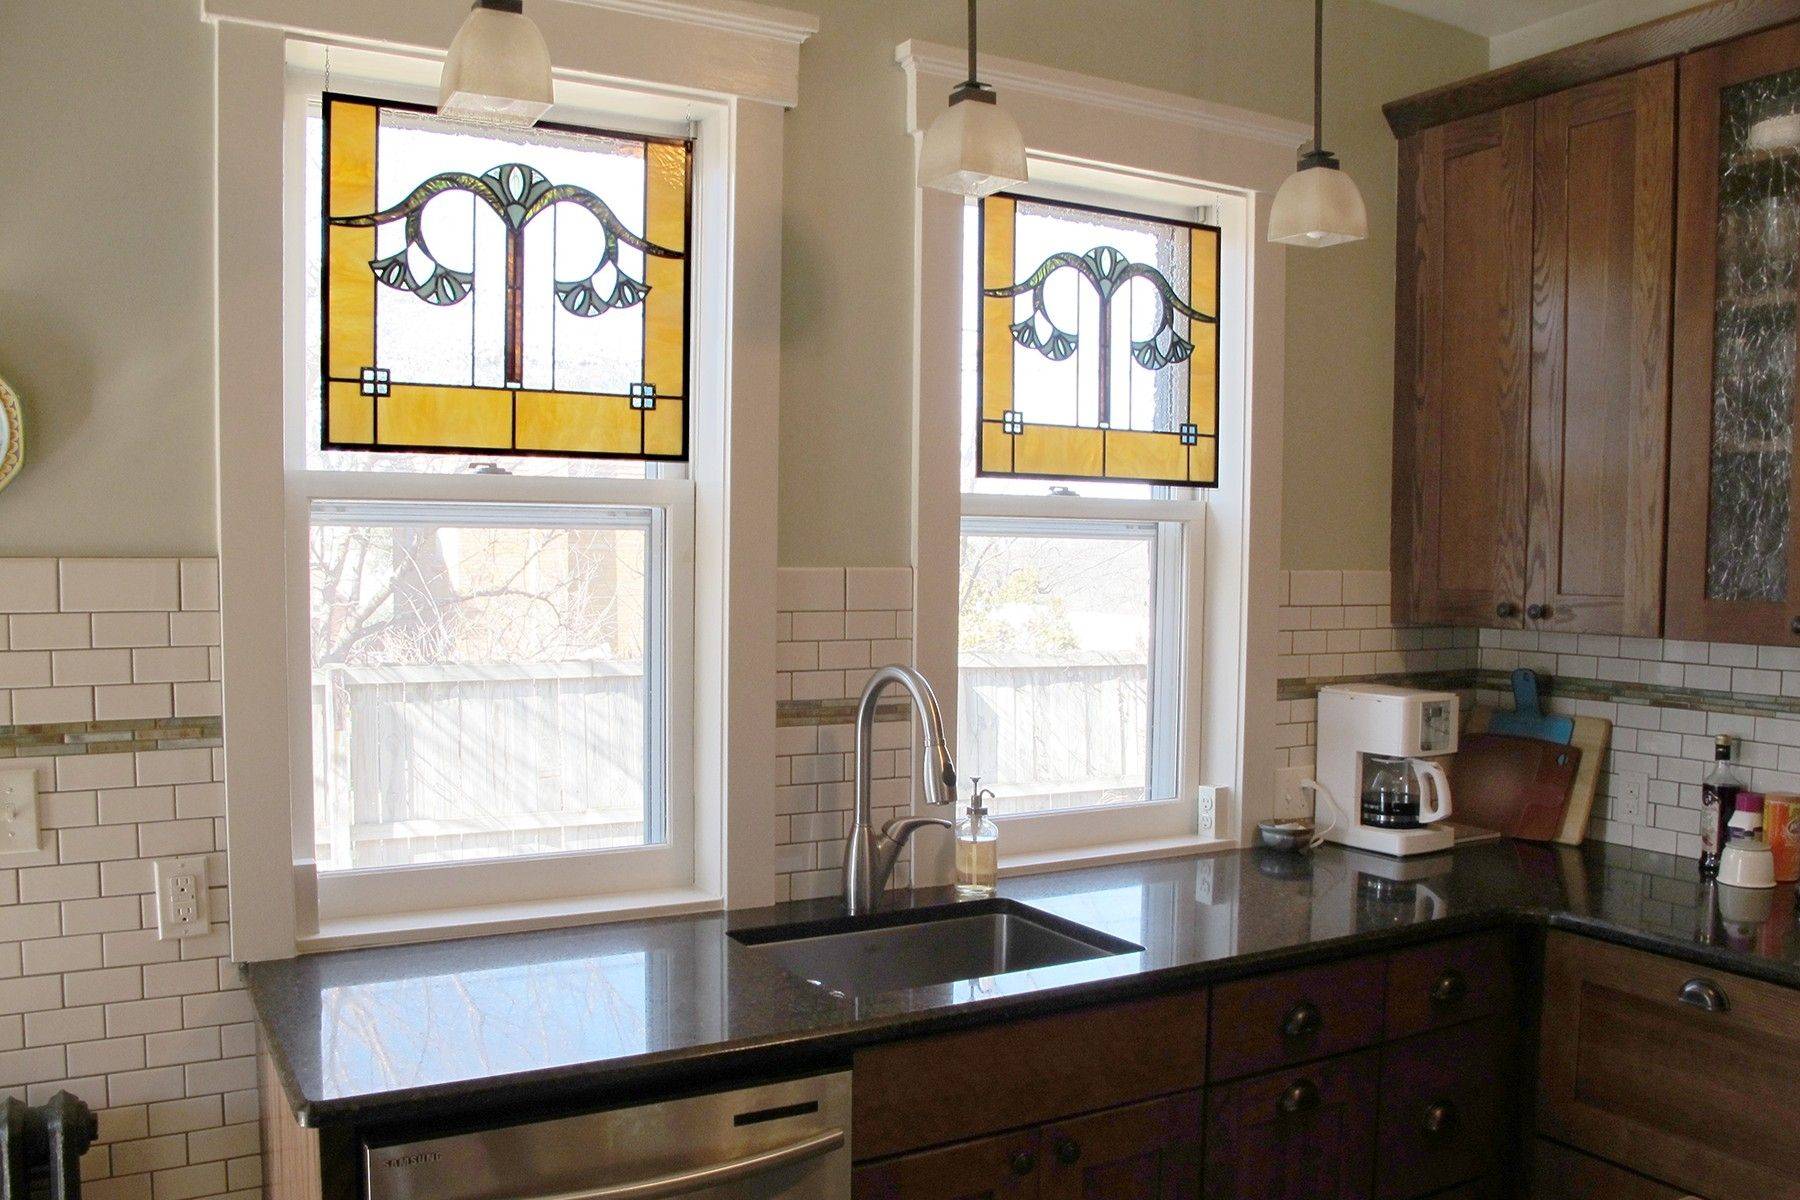 Отдельное окно расширение. Кухня с окном. Интерьер кухни с окном. Большие окна на кухне. Кухня в доме с окном.